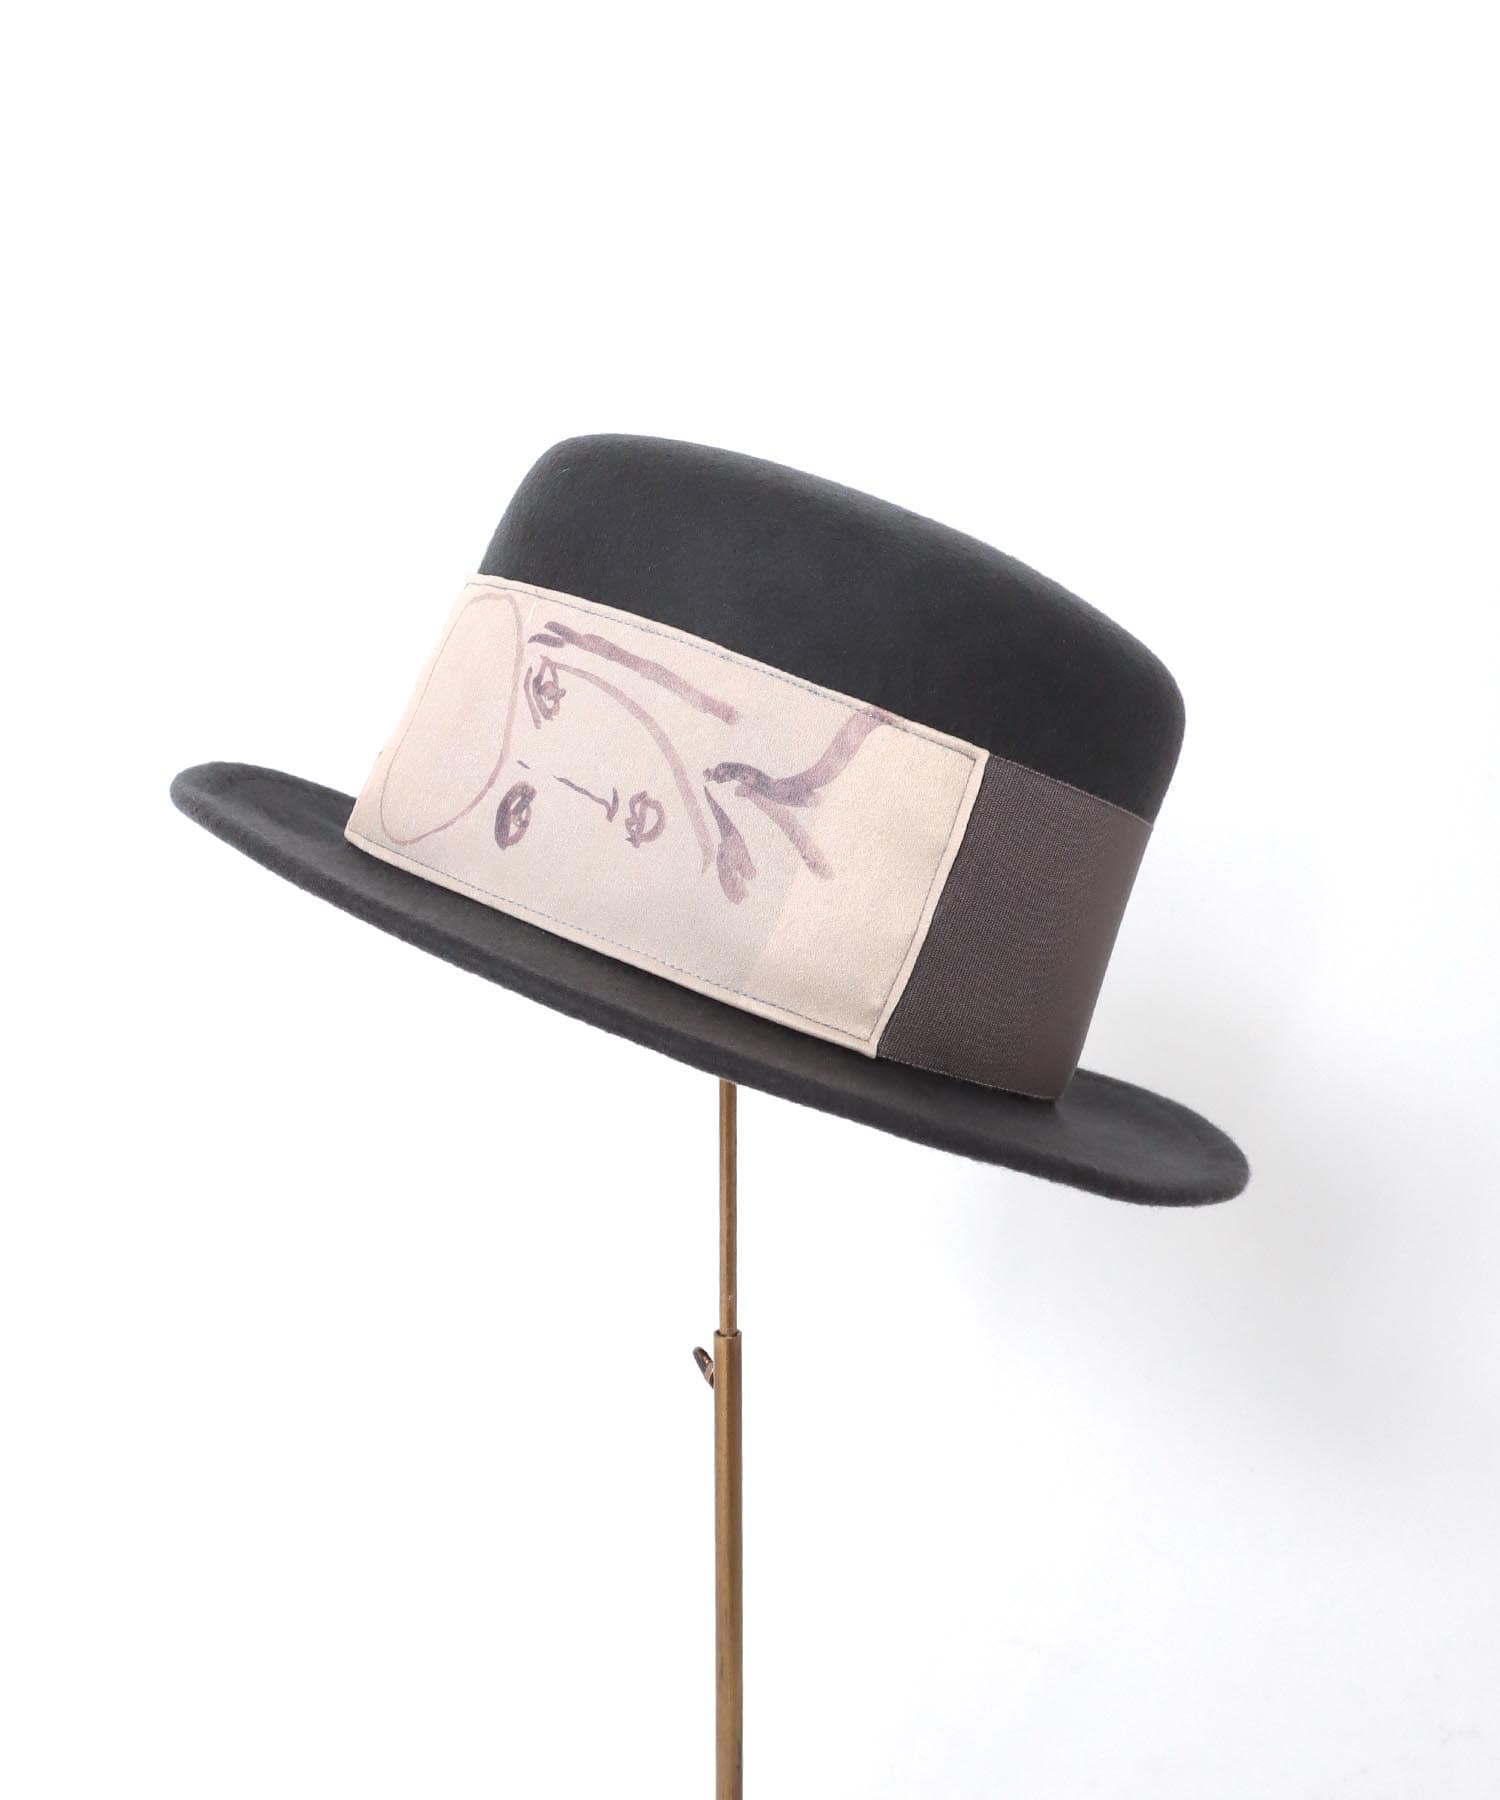 一部店舗限定》【Barairo no boushi / バラ色の帽子】肖像画のシルク